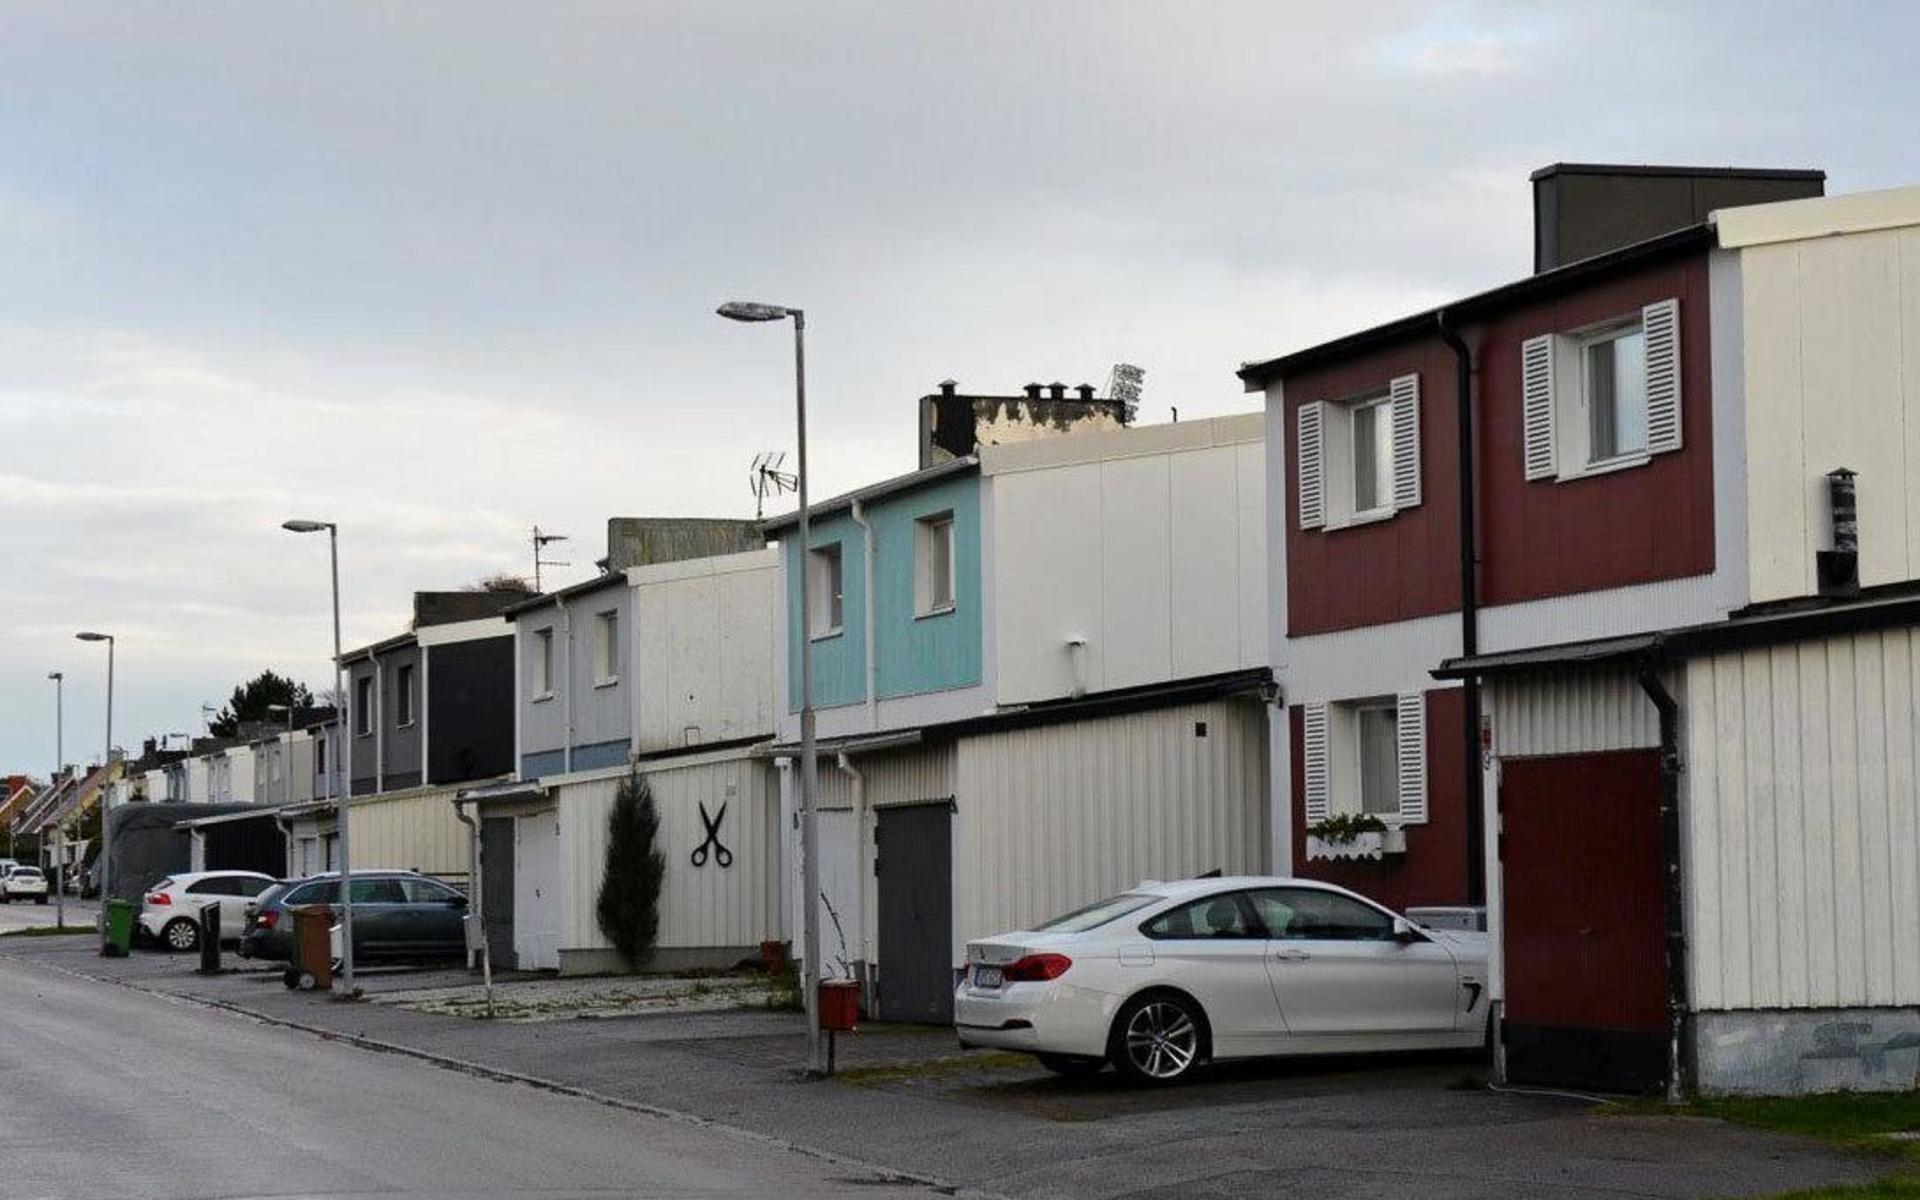 Fler kan komma att behöva måla om sina hus på Herting i ljusa pastellfärger. 